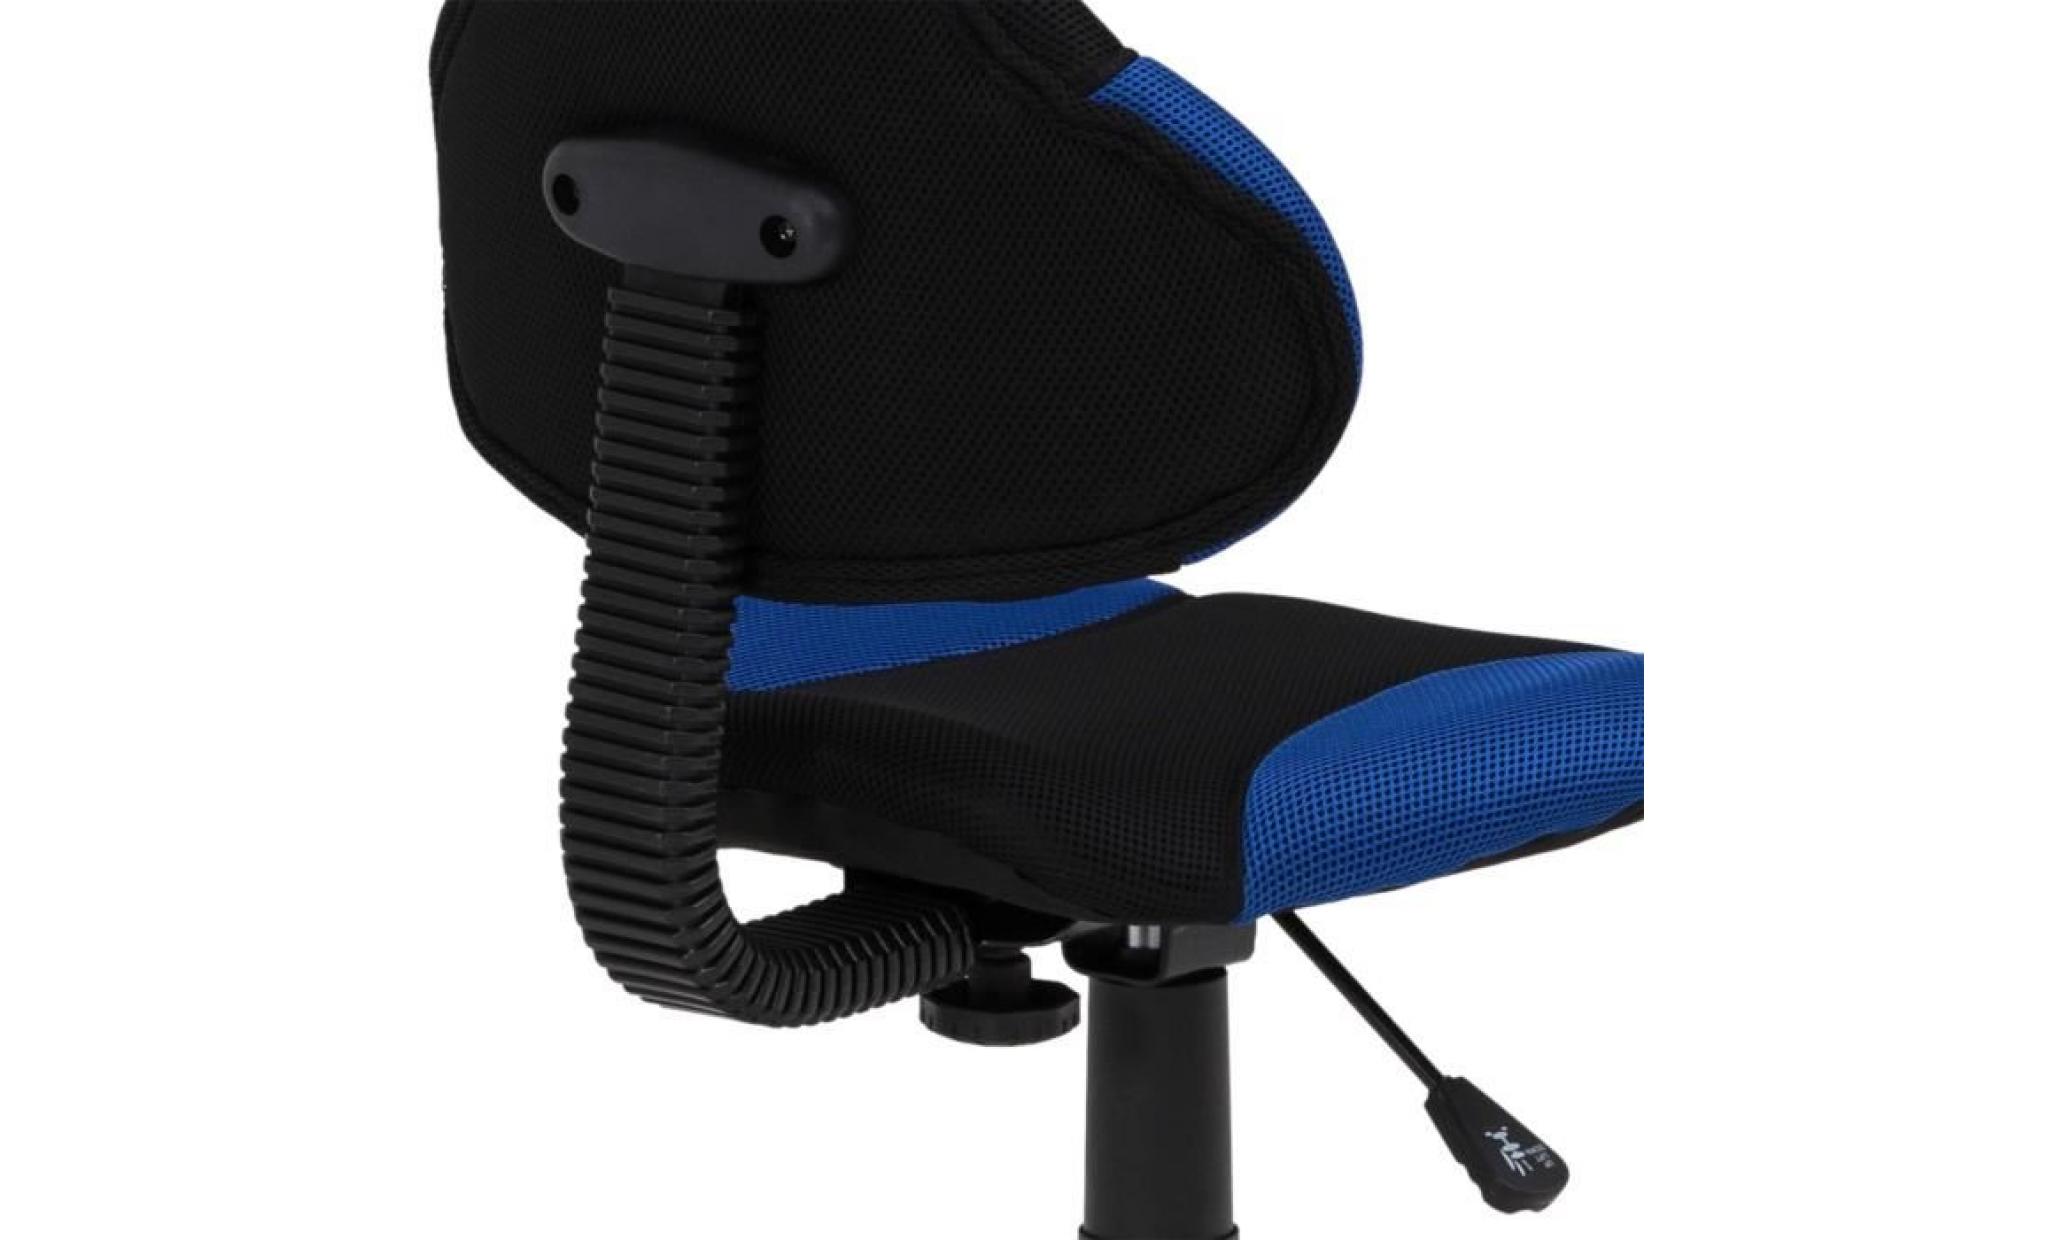 chaise de bureau pour enfant alondra fauteuil pivotant avec hauteur réglable, revêtement en mesh noir/bleu pas cher